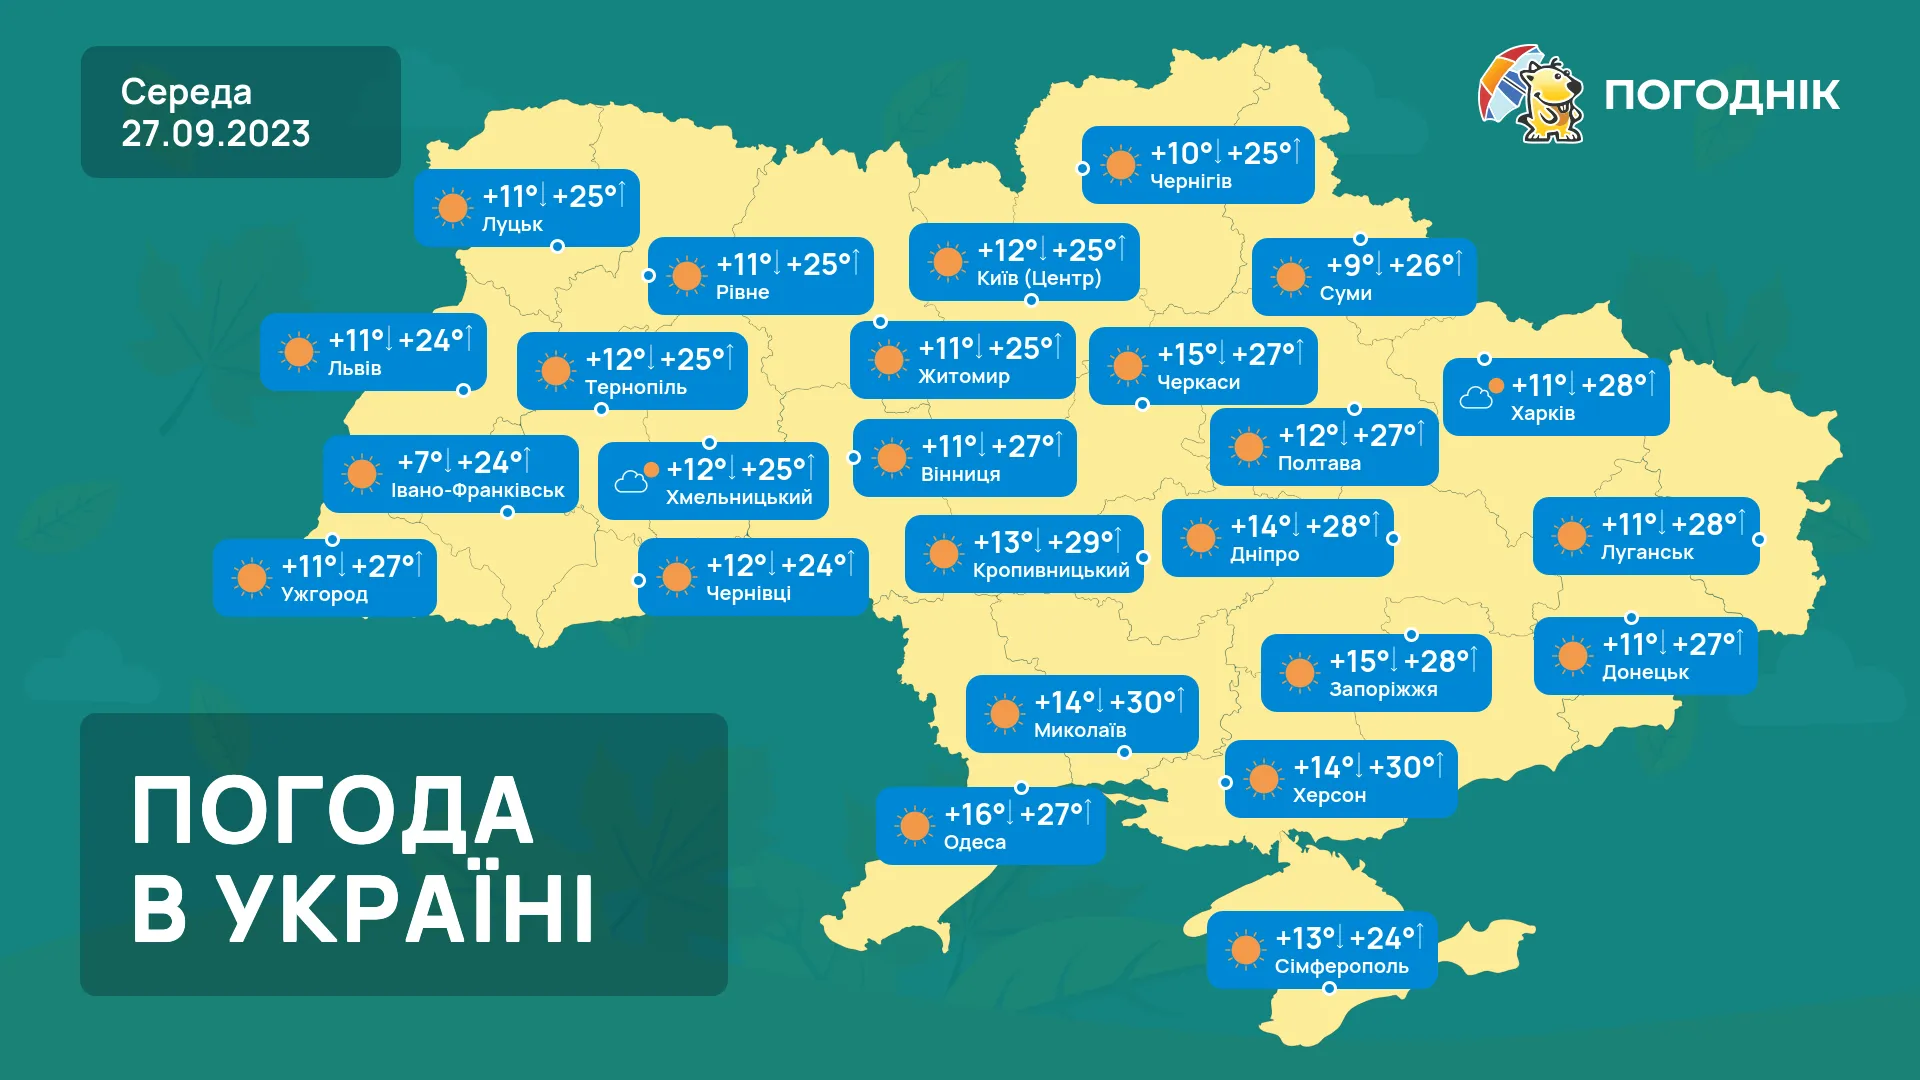 Останнє тепло в Україні, похолодання вже рядом. Погода на три дні 27-29 вересня. Карта погоди.